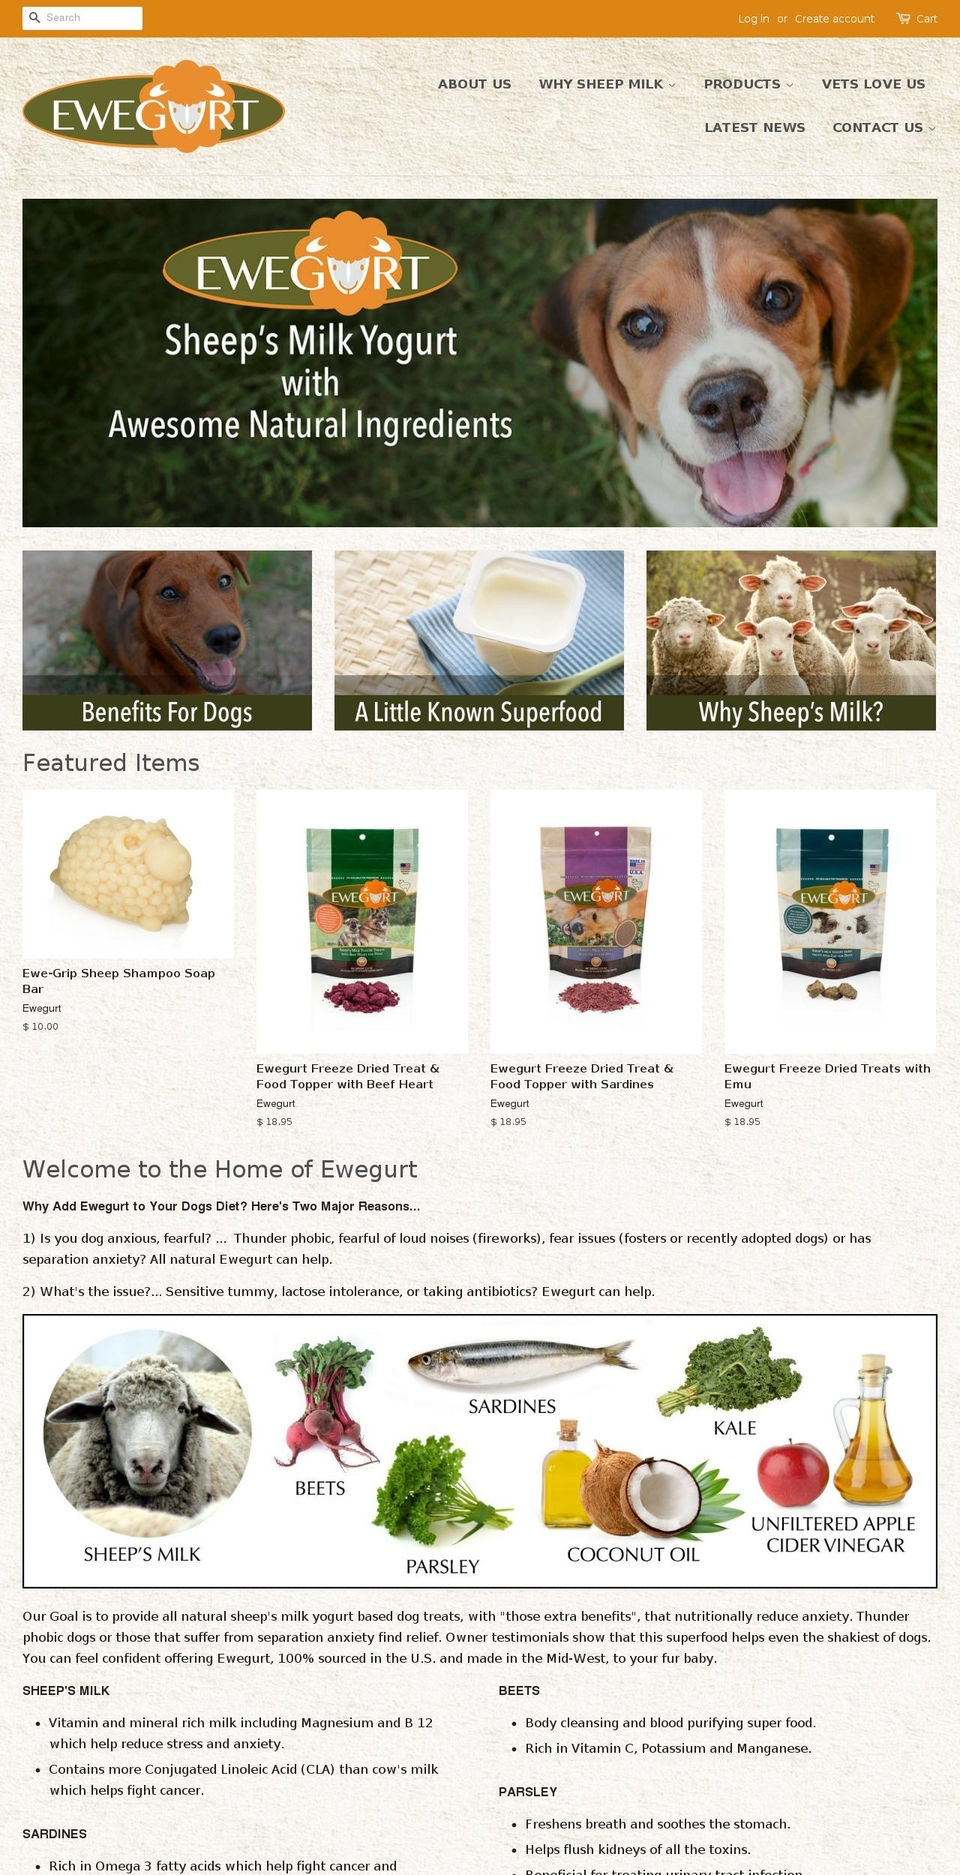 Kagami Shopify theme site example ewegurt.com